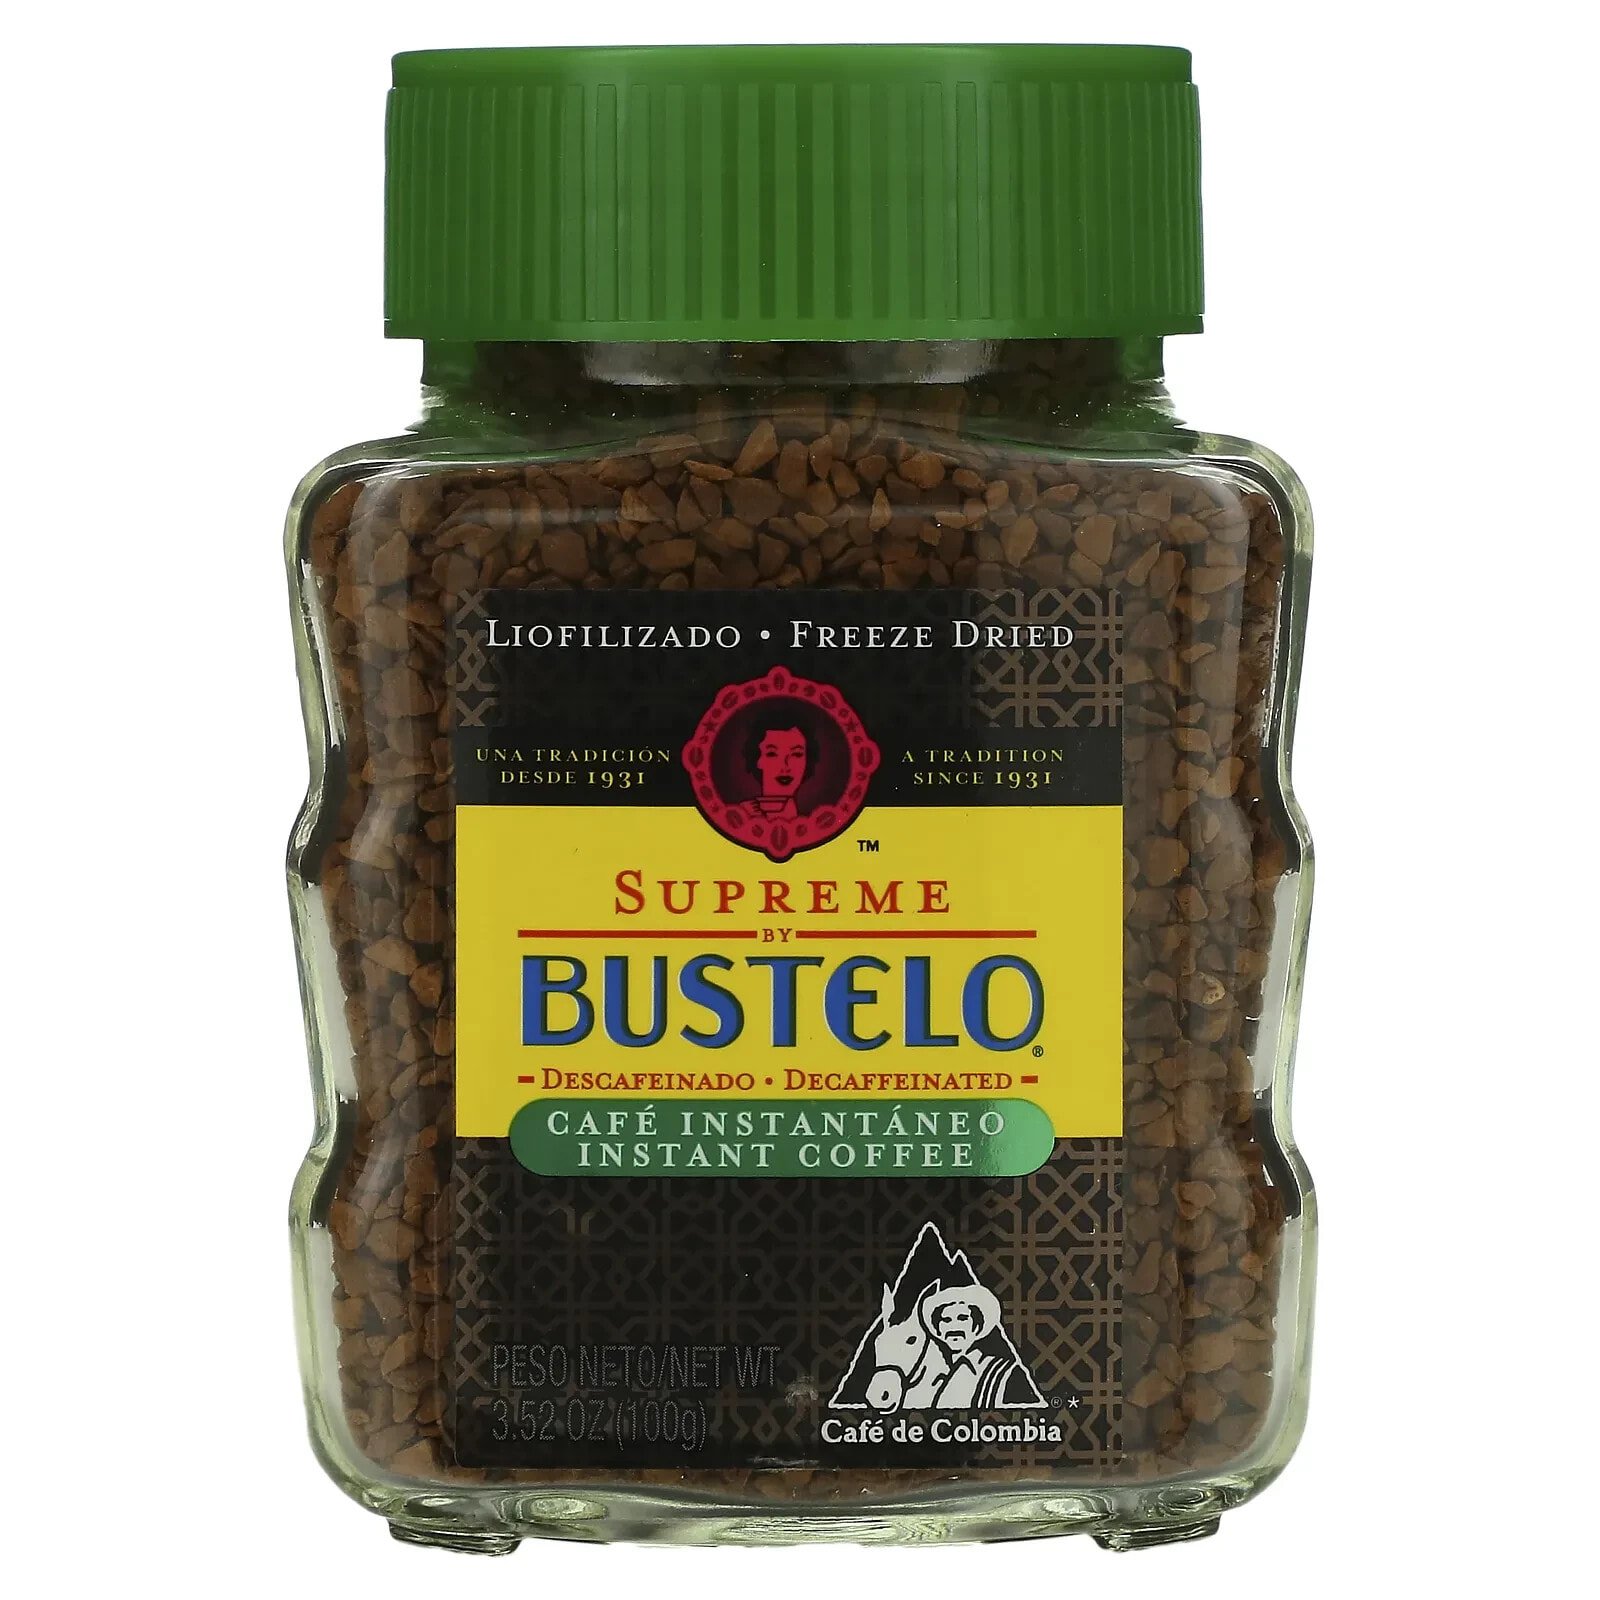 Café Bustelo, Supreme by Bustelo, растворимый кофе, сублимированный, без кофеина, 100 г (3,52 унции)